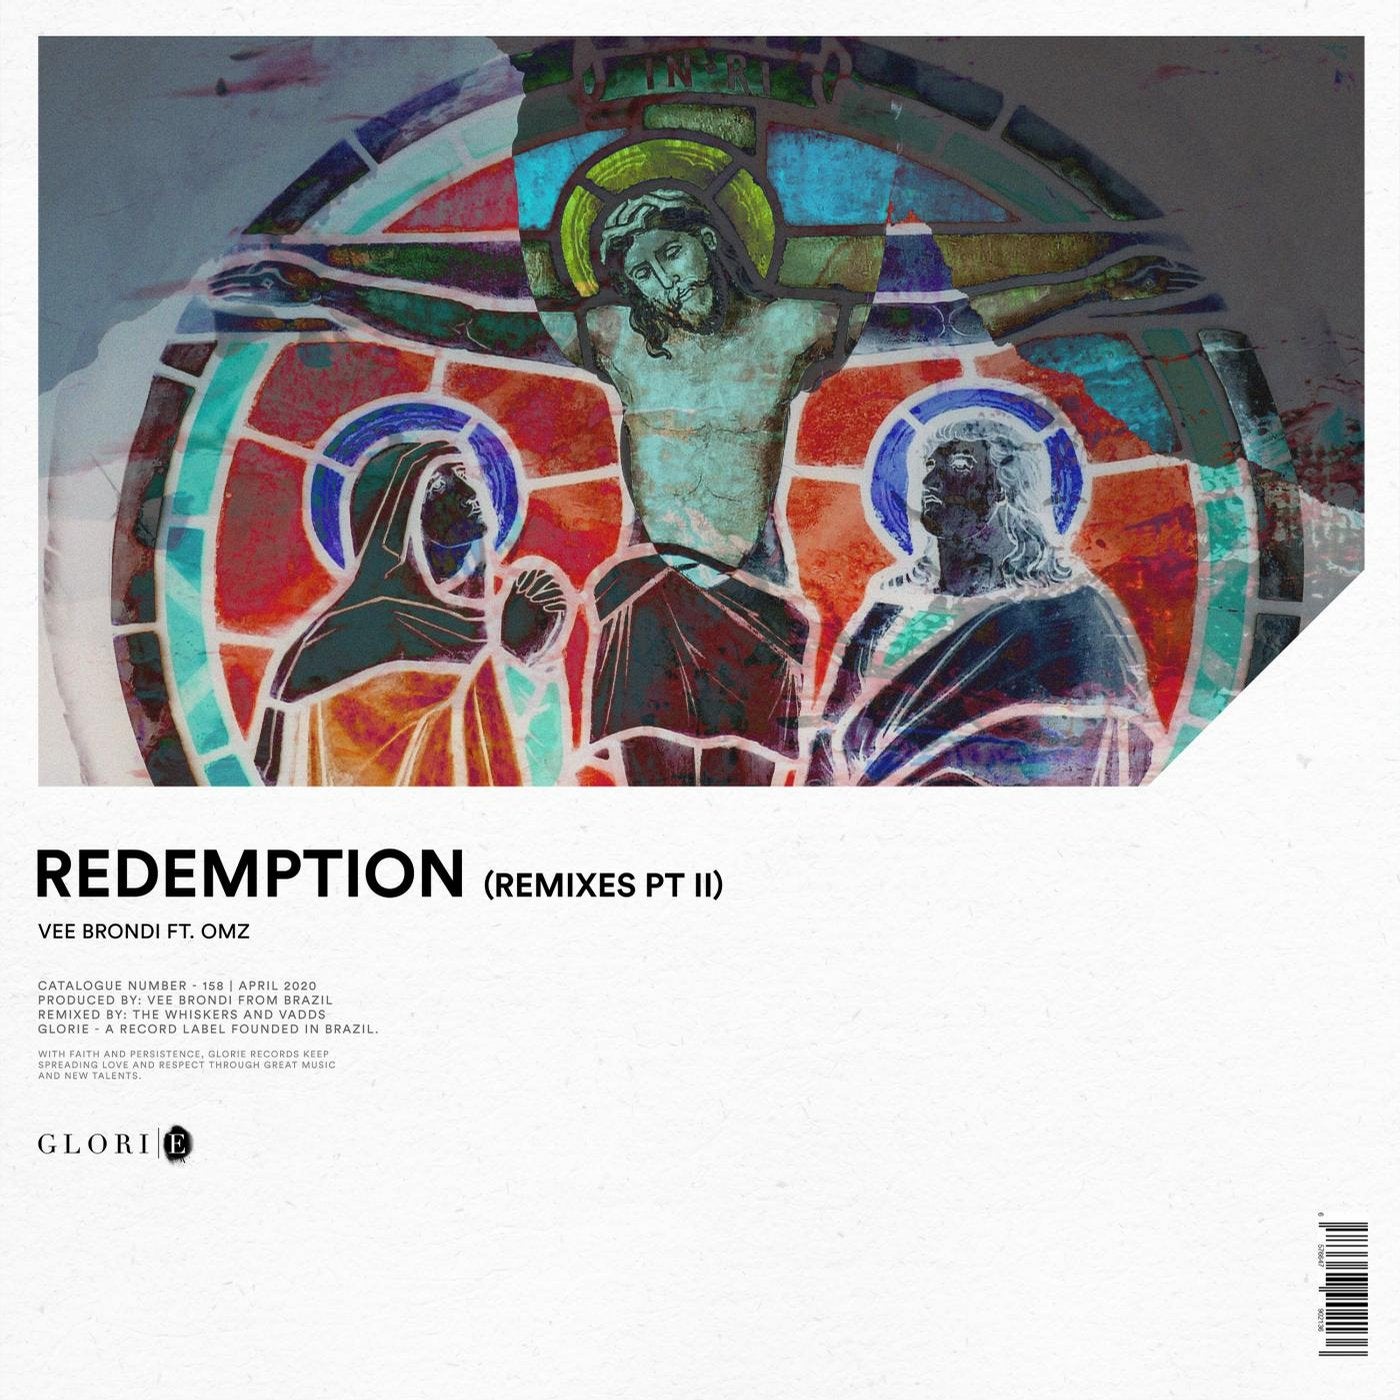 Redemption (Remixes Pt II)